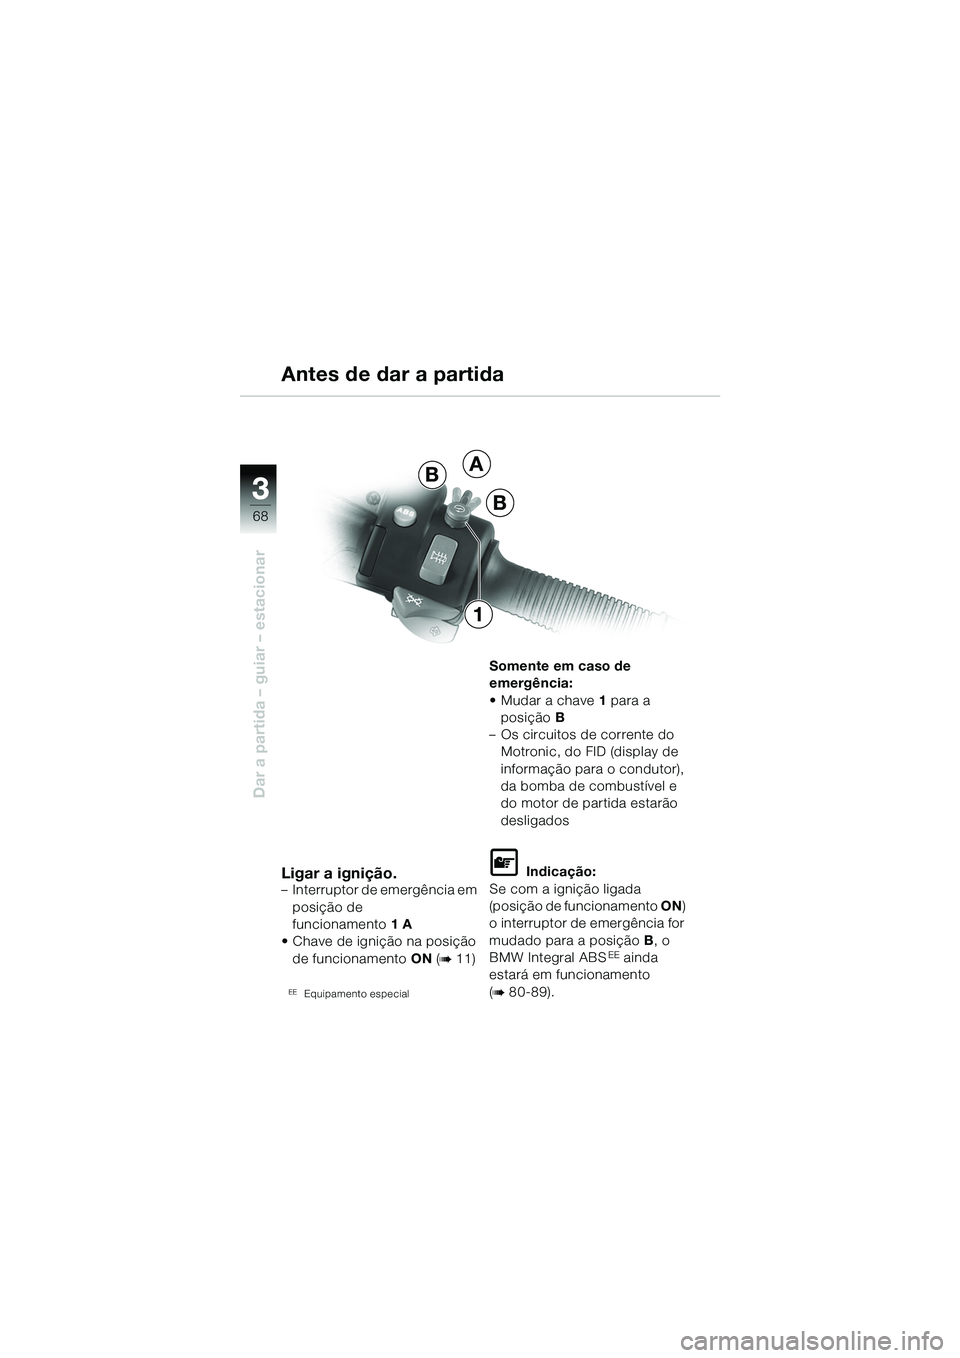 BMW MOTORRAD R 1150 GS 2002  Manual do condutor (in Portuguese) 33
68
Dar a partida – guiar – estacionar
Ligar a ignição.– Interruptor de emergência em posição de 
funcionamento 1A
• Chave de ignição na posição  de funcionamento ON (
b 11)
EEEquip